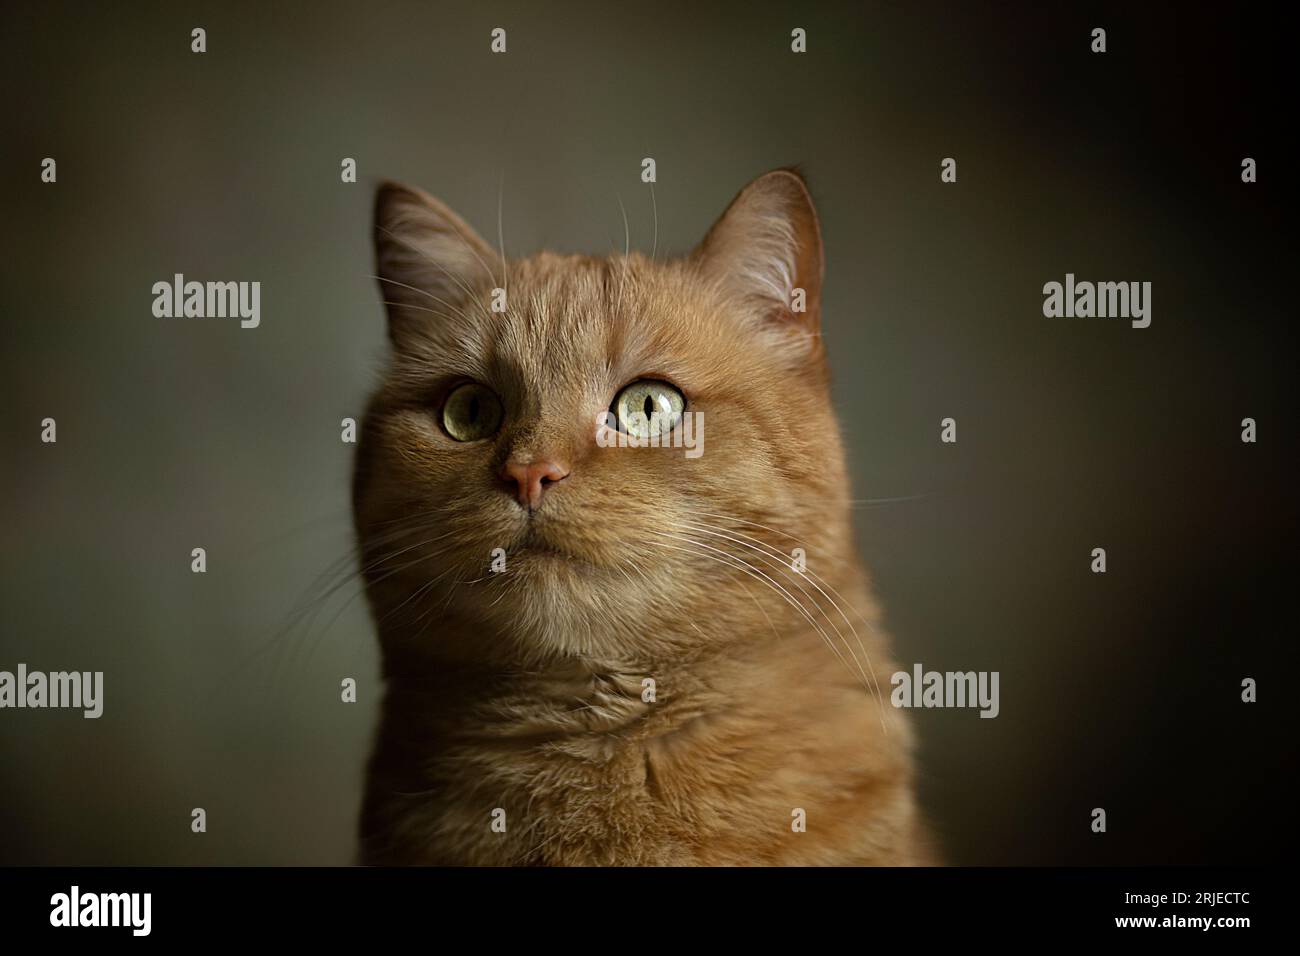 Photographie en gros plan de chaton de gingembre portrait avec des yeux verts sur fond pastel. Mise au point sélective. Visage de chat avec fond sombre. Gingembre domestique Banque D'Images